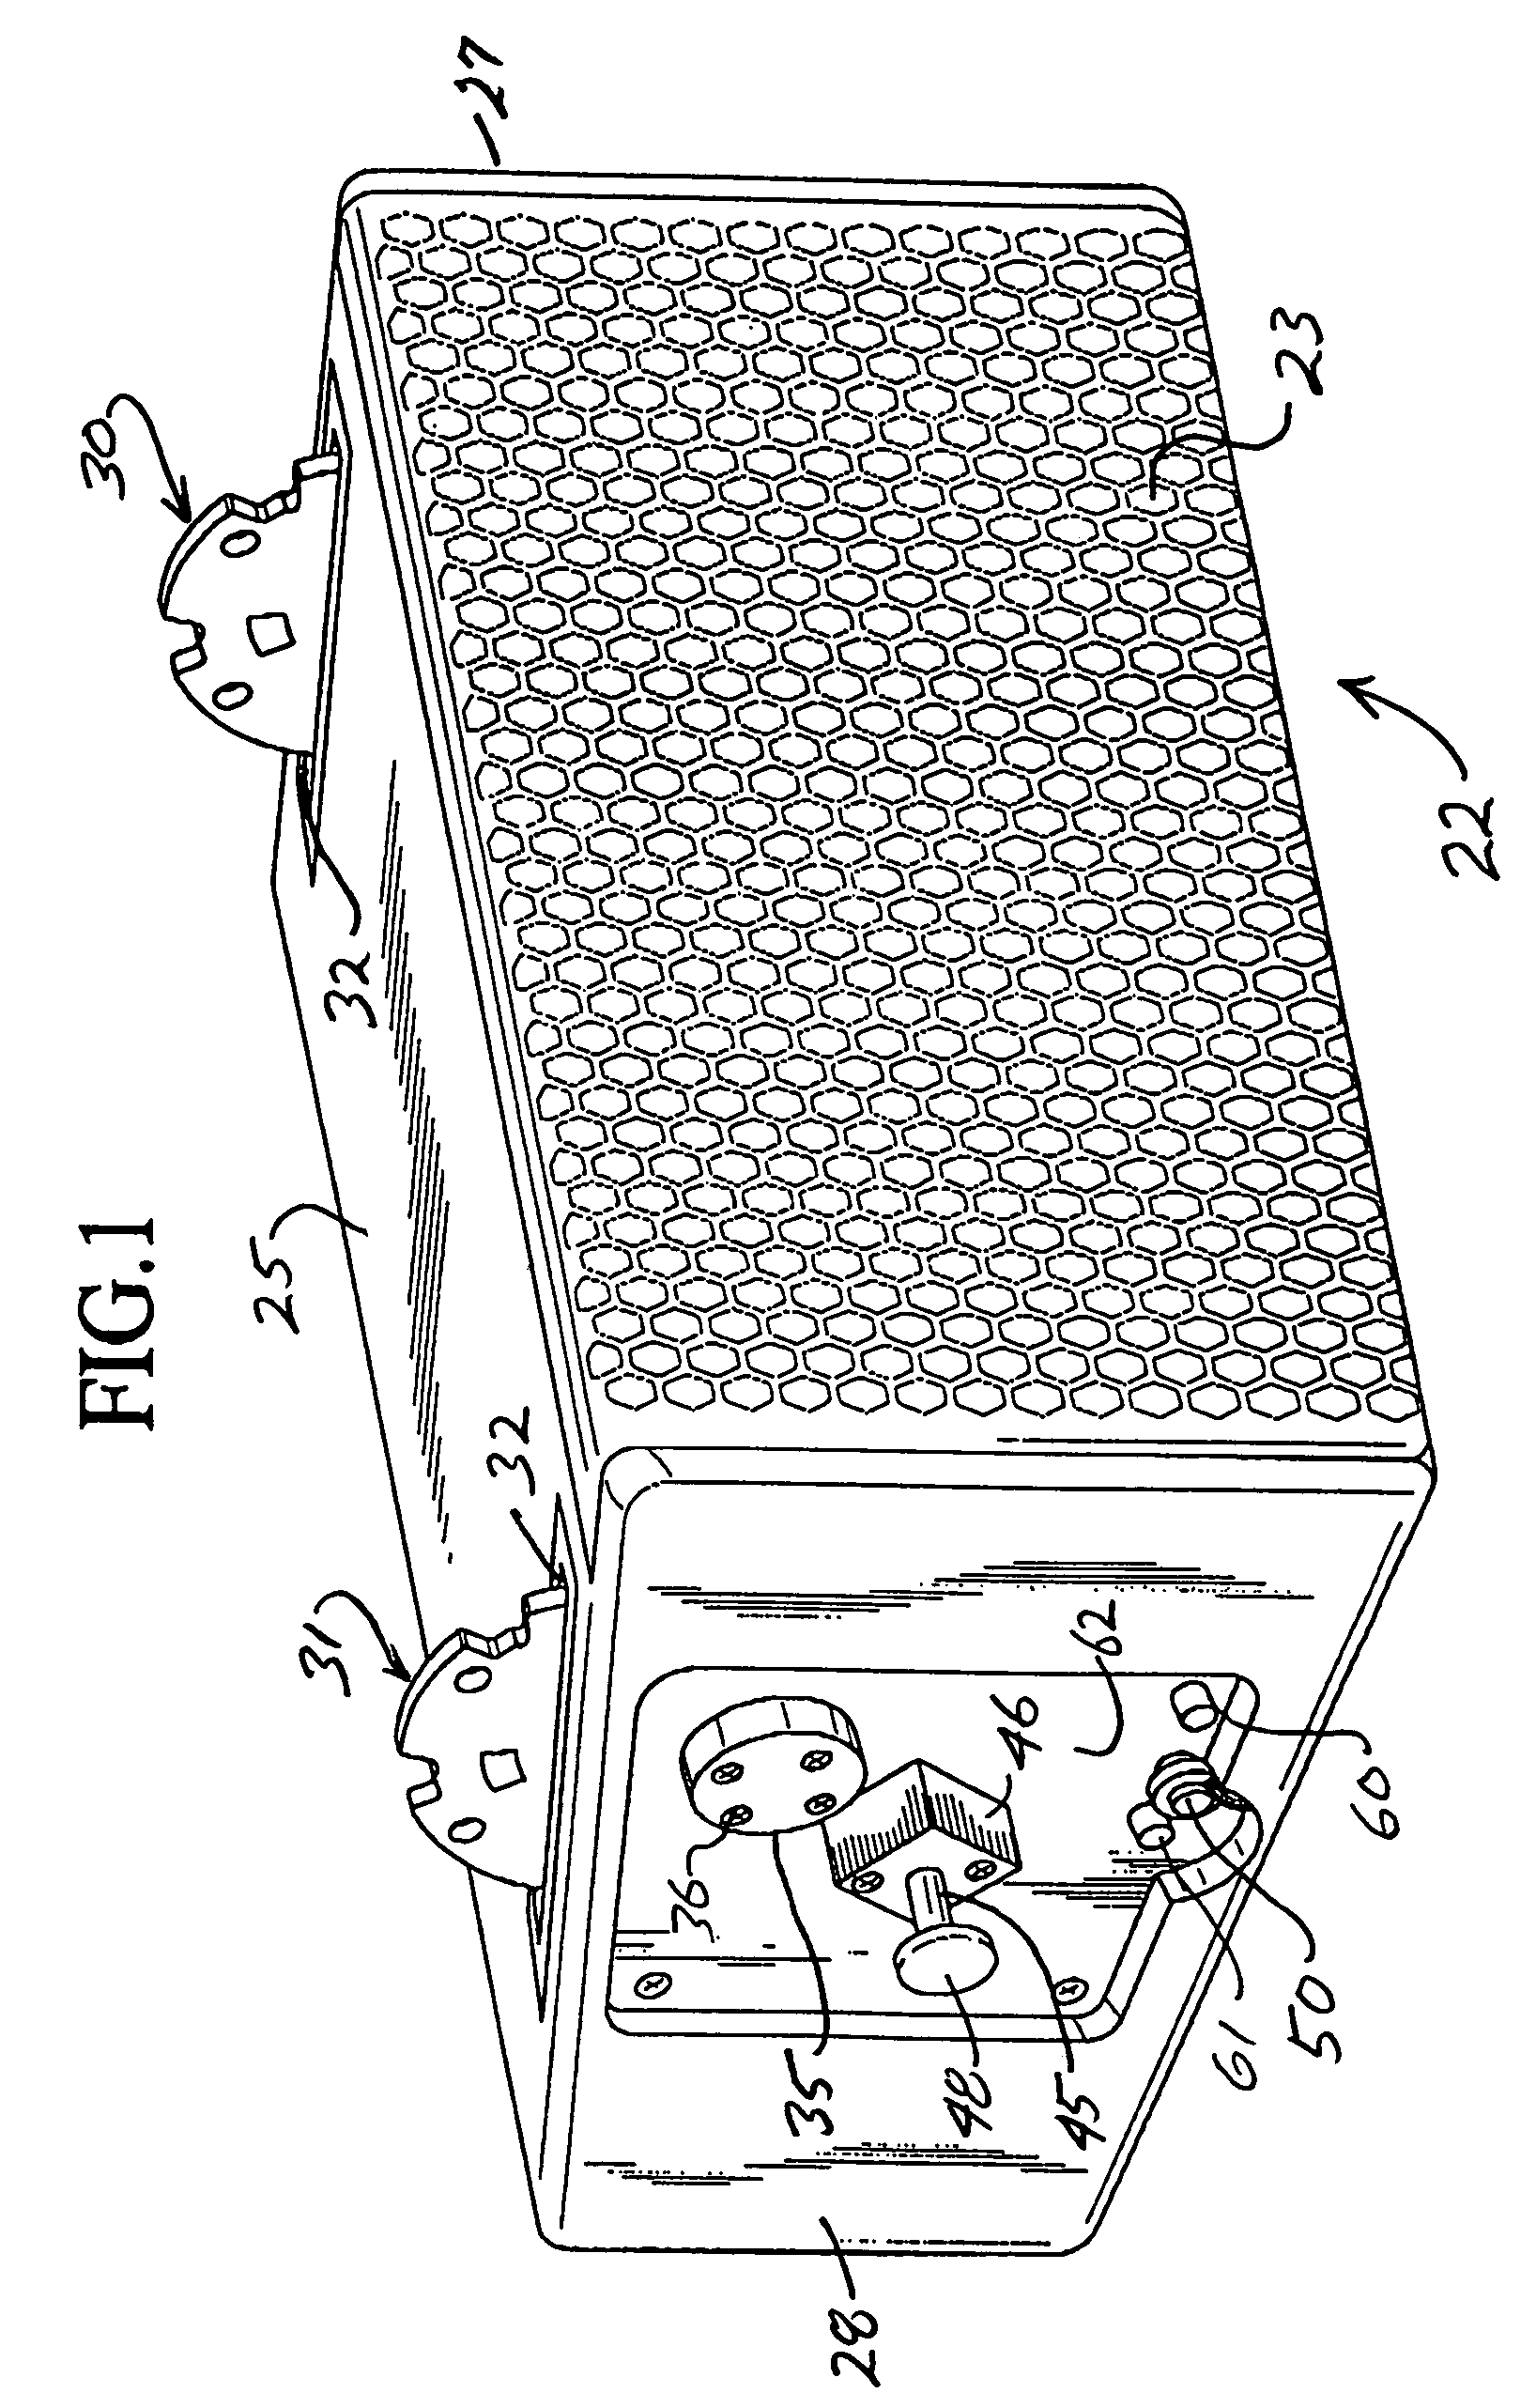 Rigging system for loudspeaker arrays